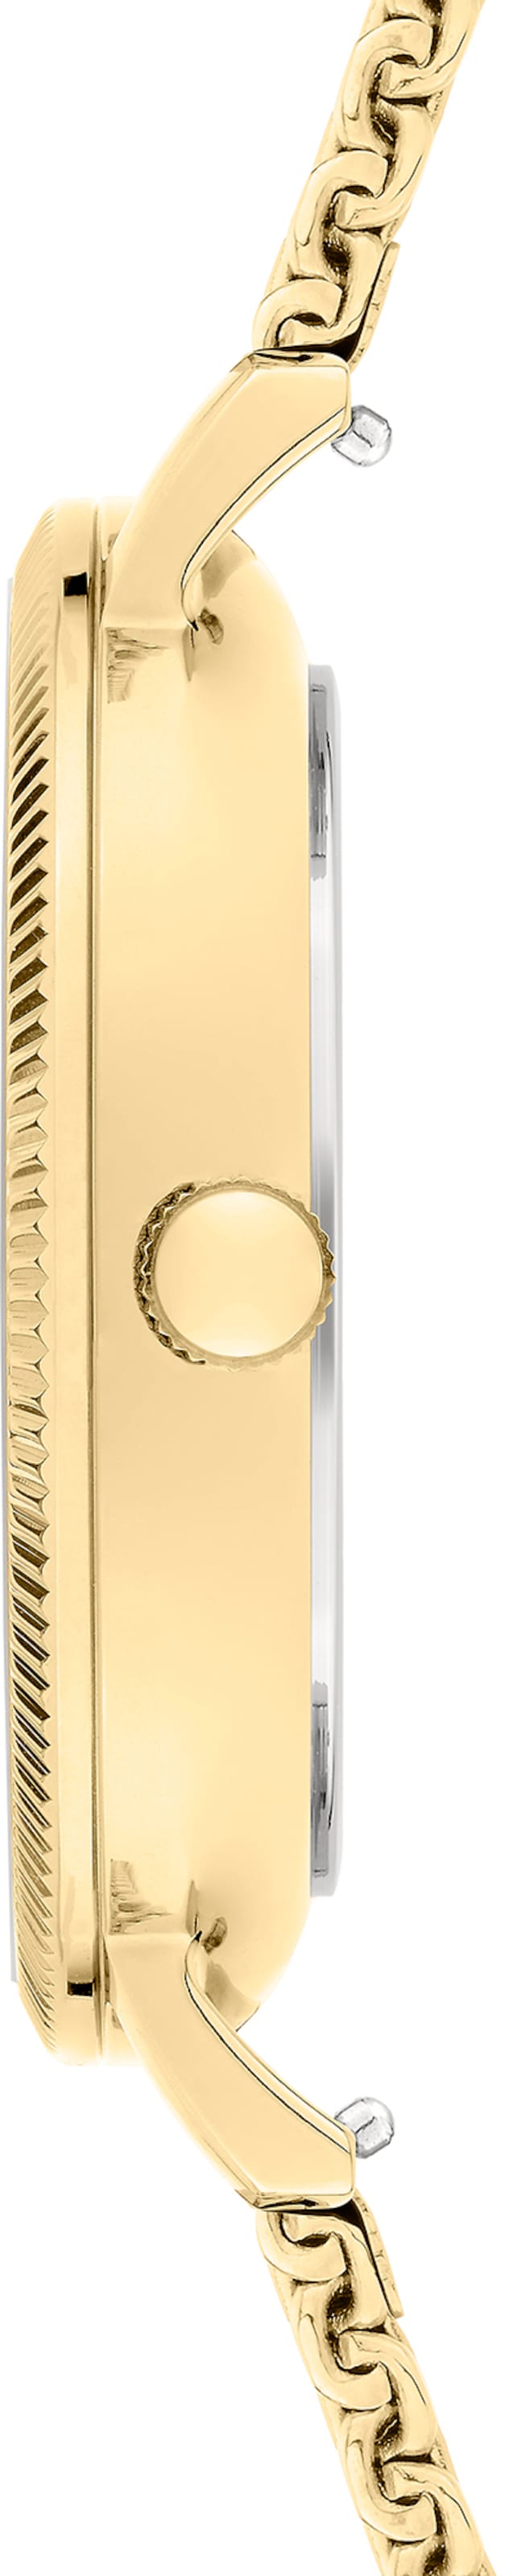 Frauen Uhren Liebeskind Berlin Uhr in Gold - QR14439